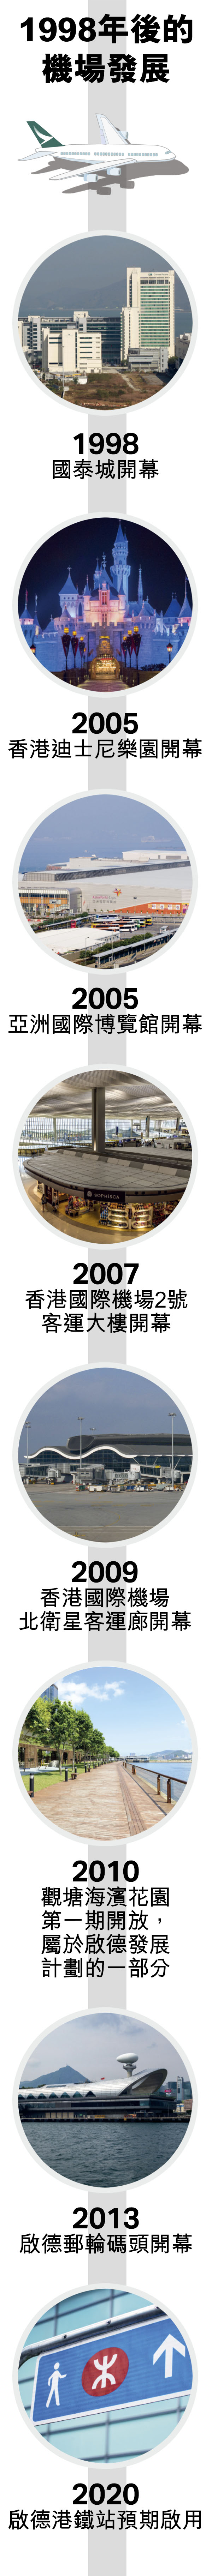 香港國際機場發展的大事年表